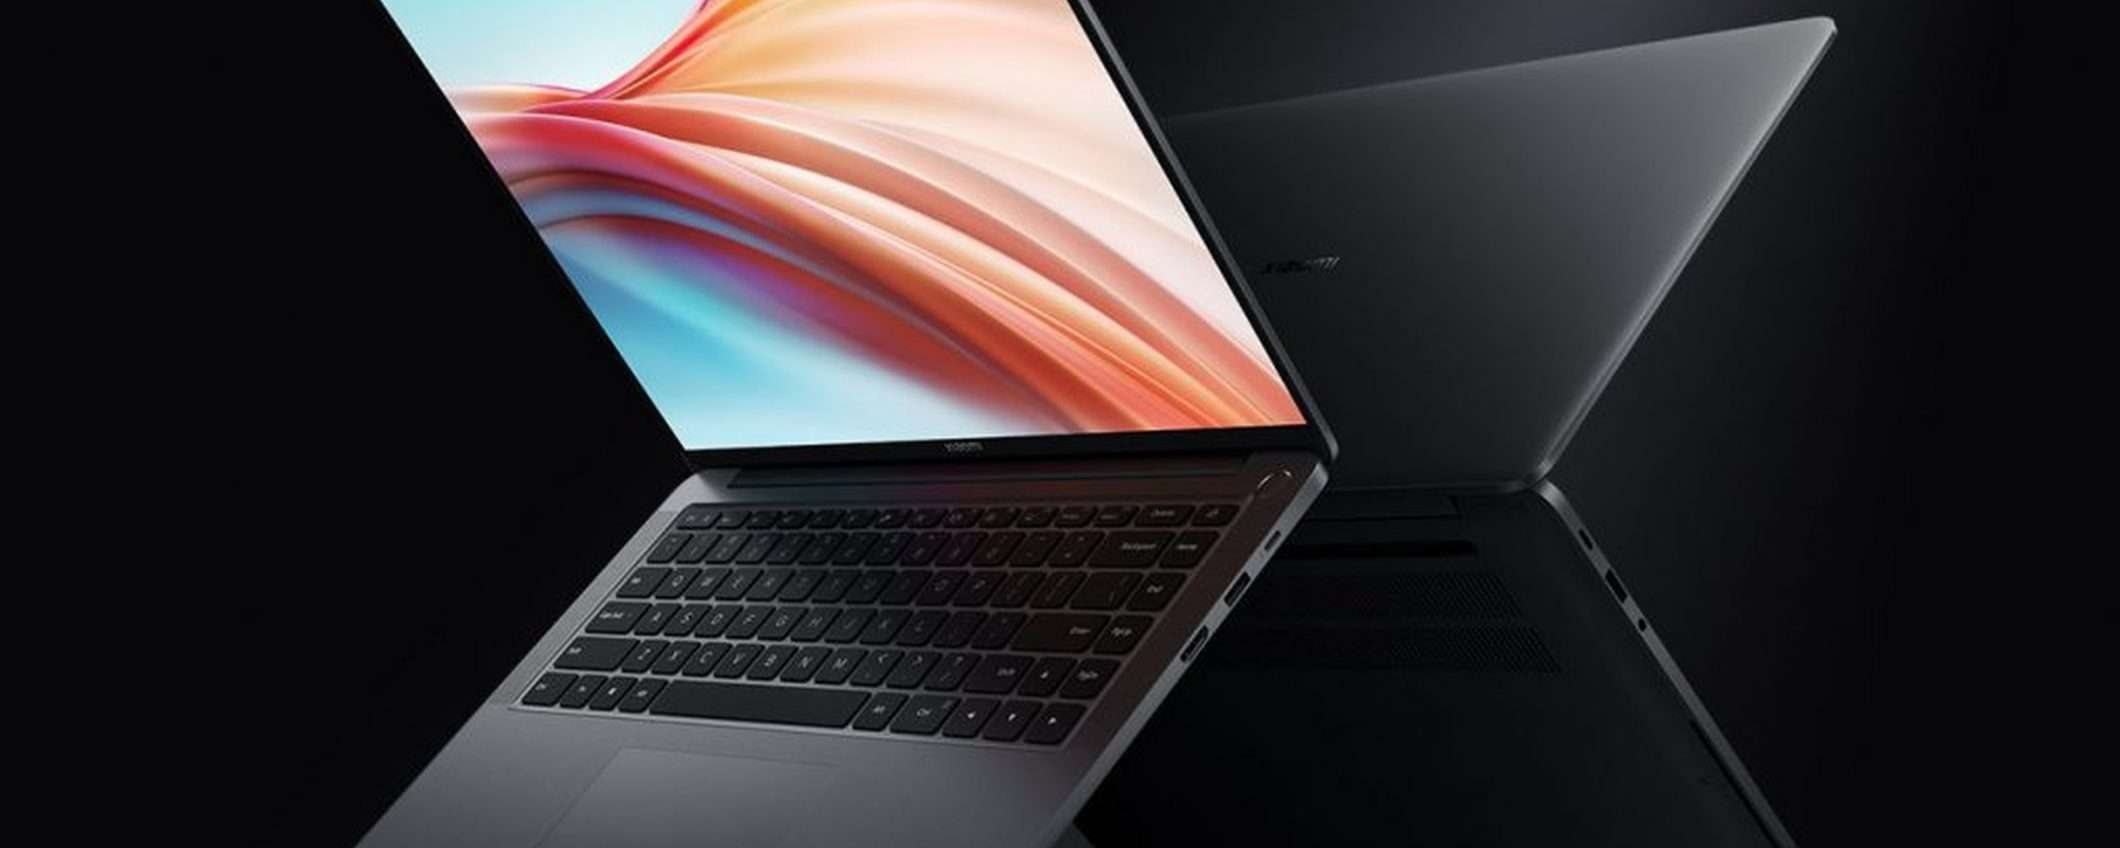 Xiaomi Mi Notebook Pro X: schermo OLED e CPU Intel